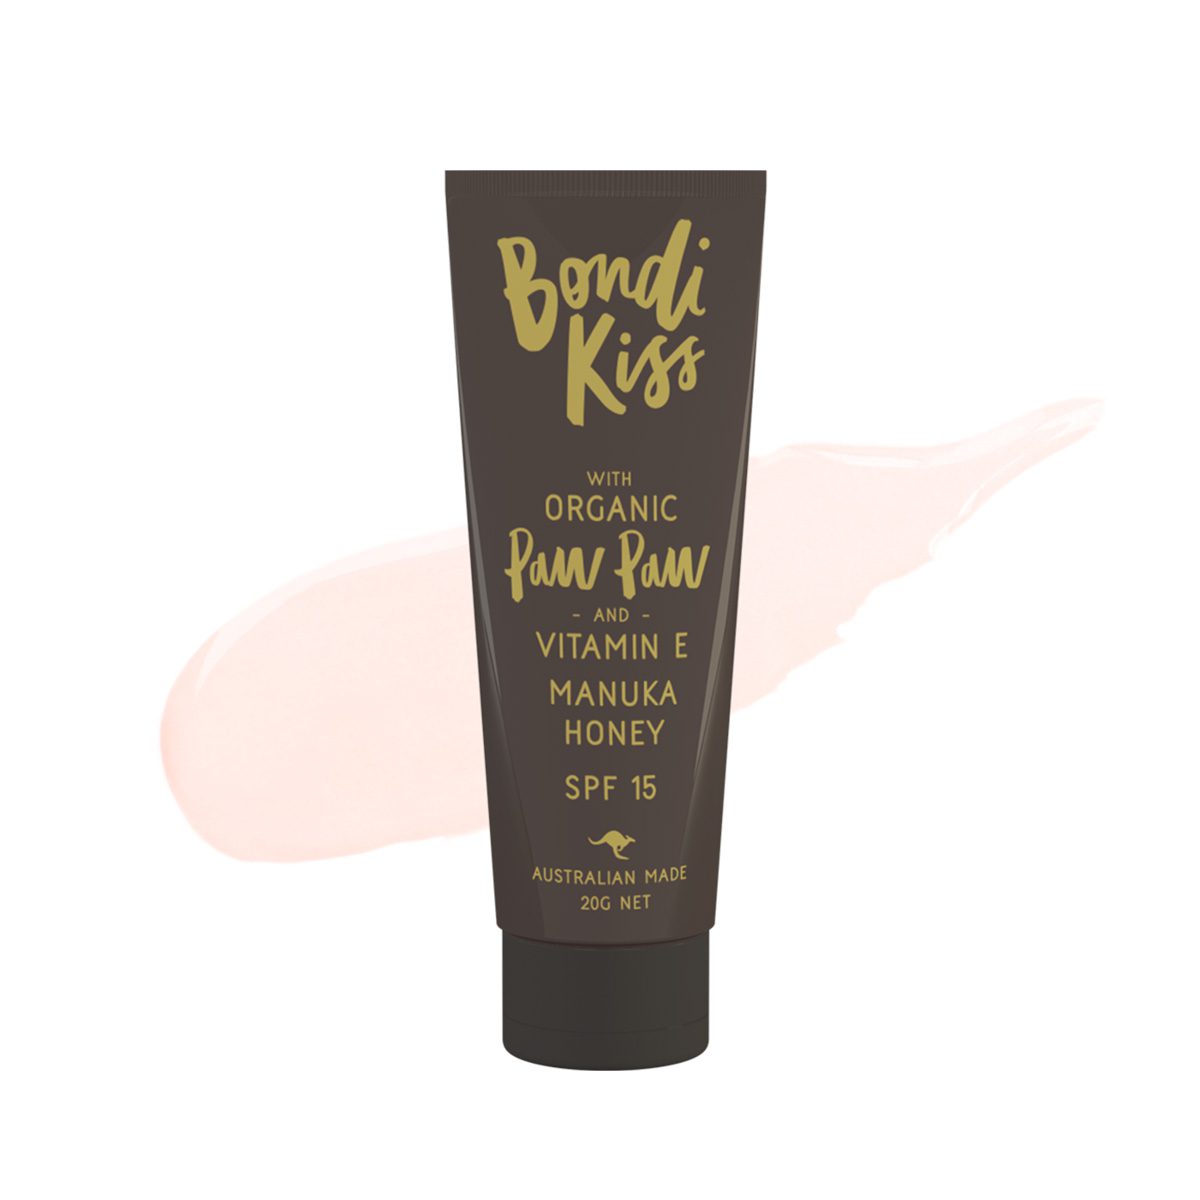 BONDI KISS // Manuka Honey Paw Paw